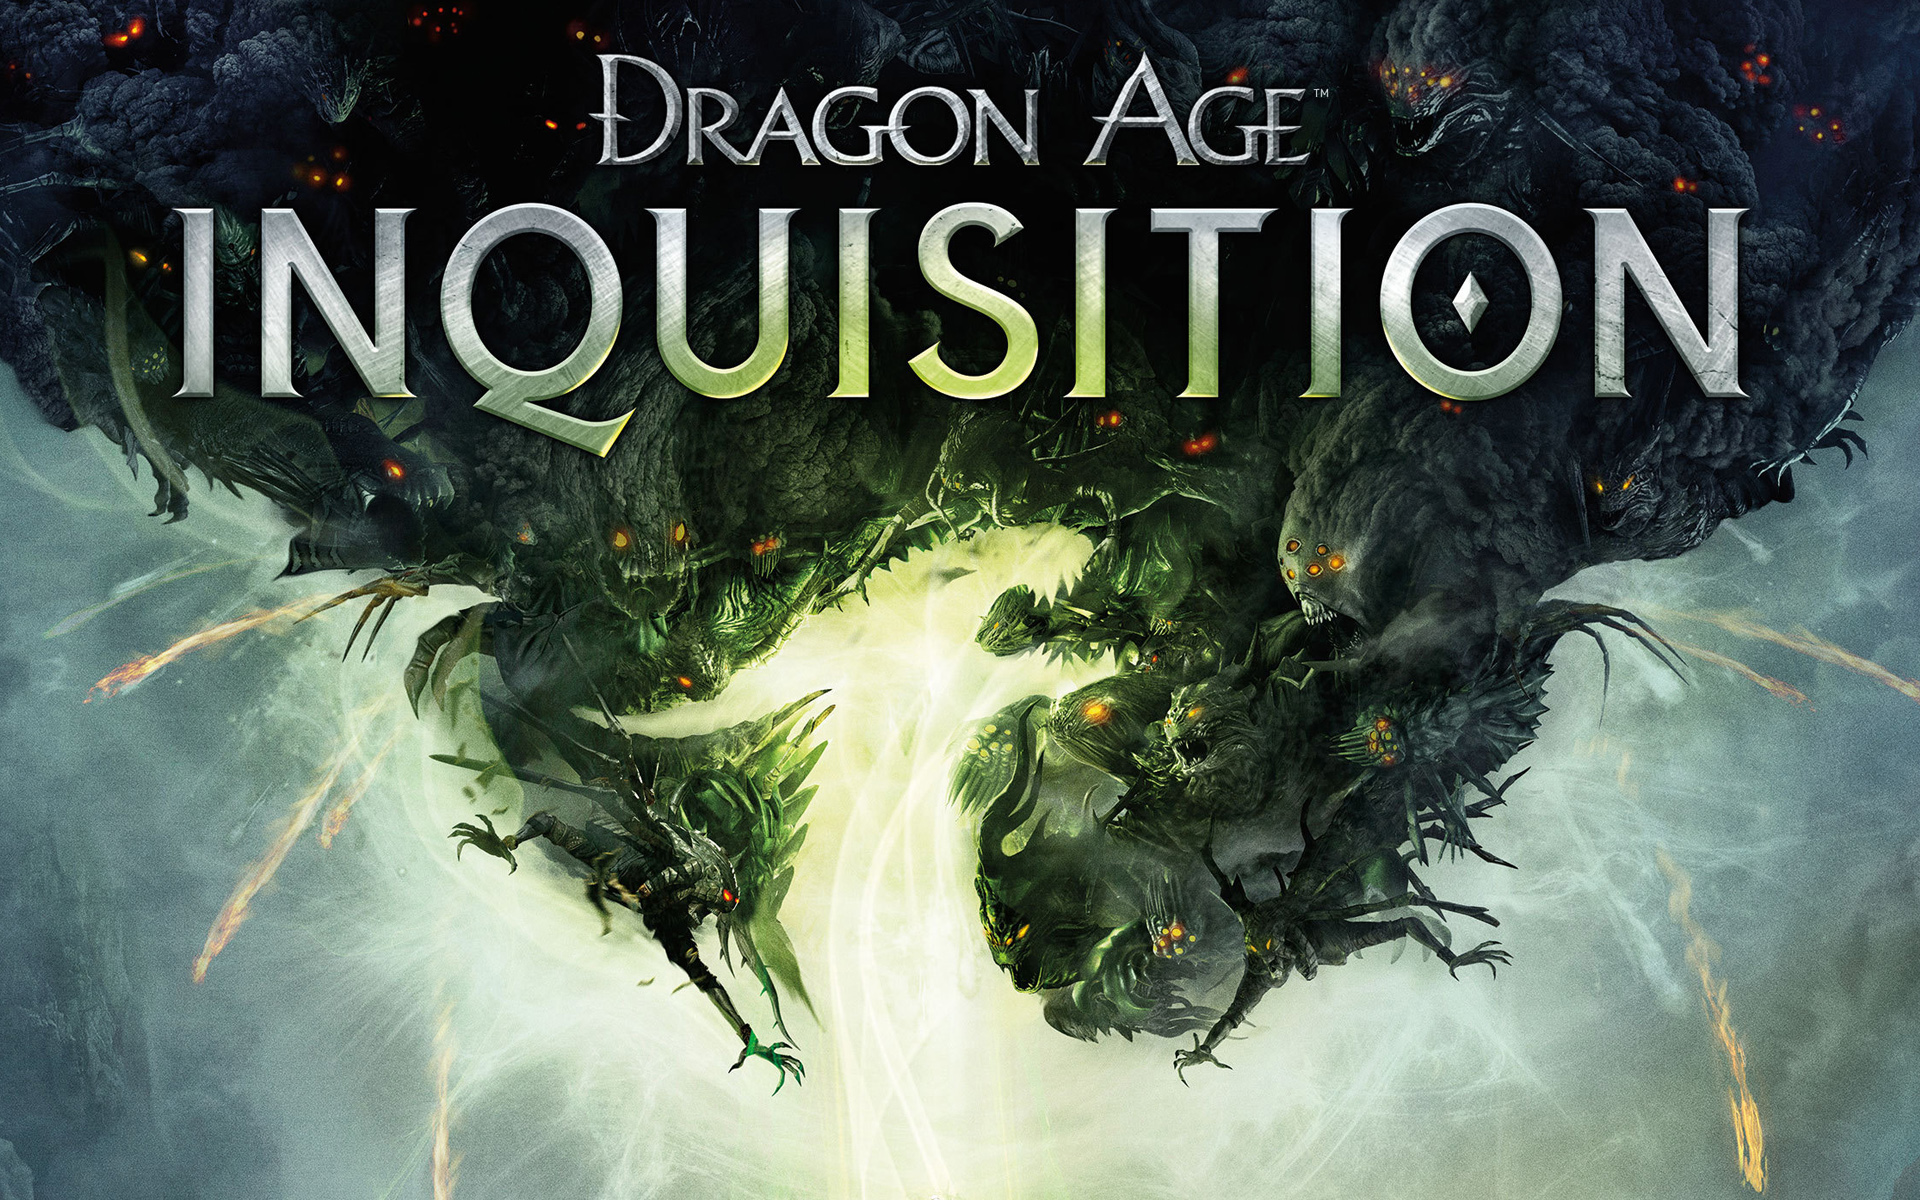 Dragon Age Inquisition coloca o jogador como o lder da